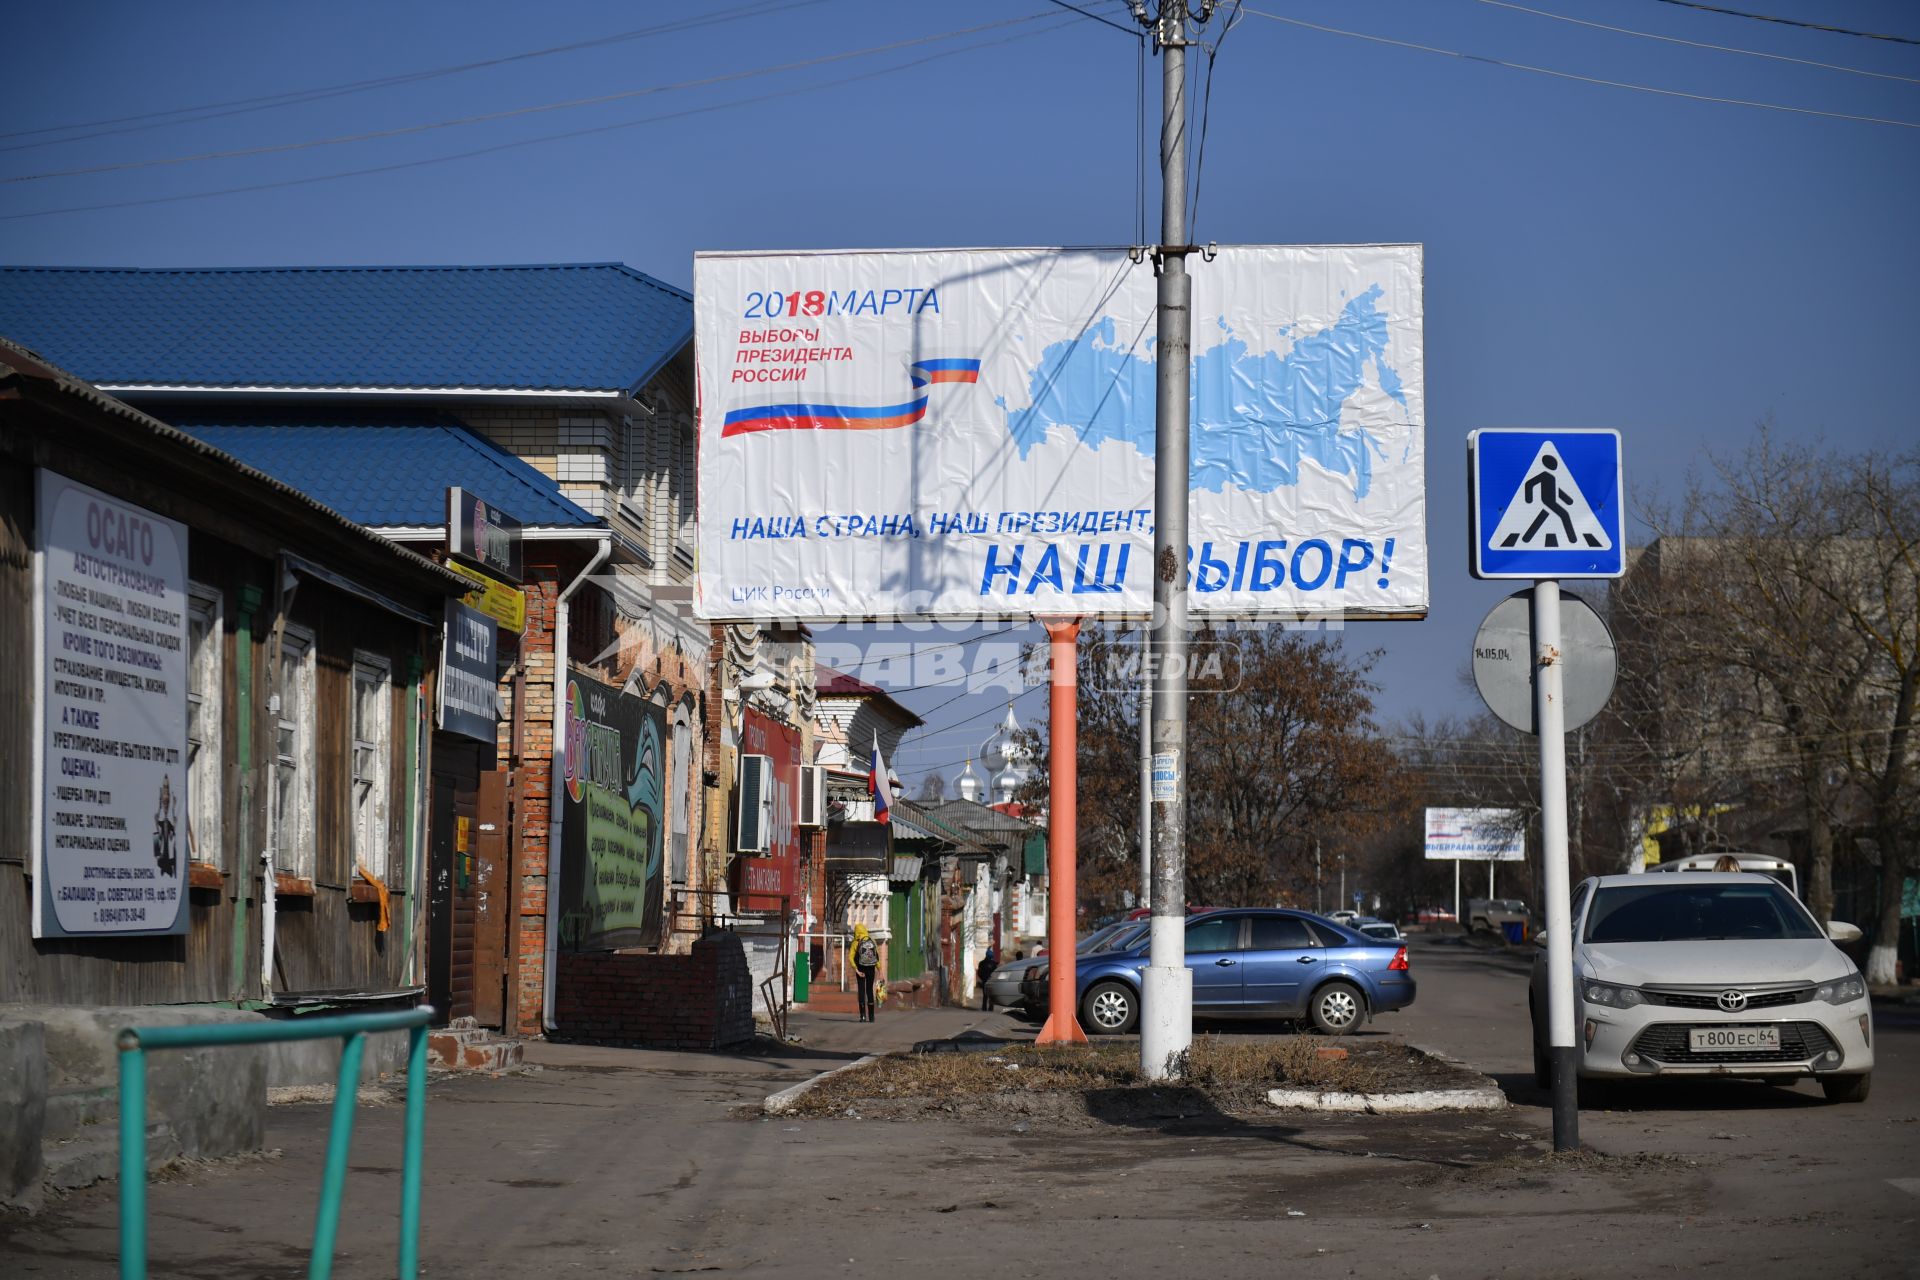 Балашов. Агитационный плакат к выборам президента РФ на одной из улиц города.